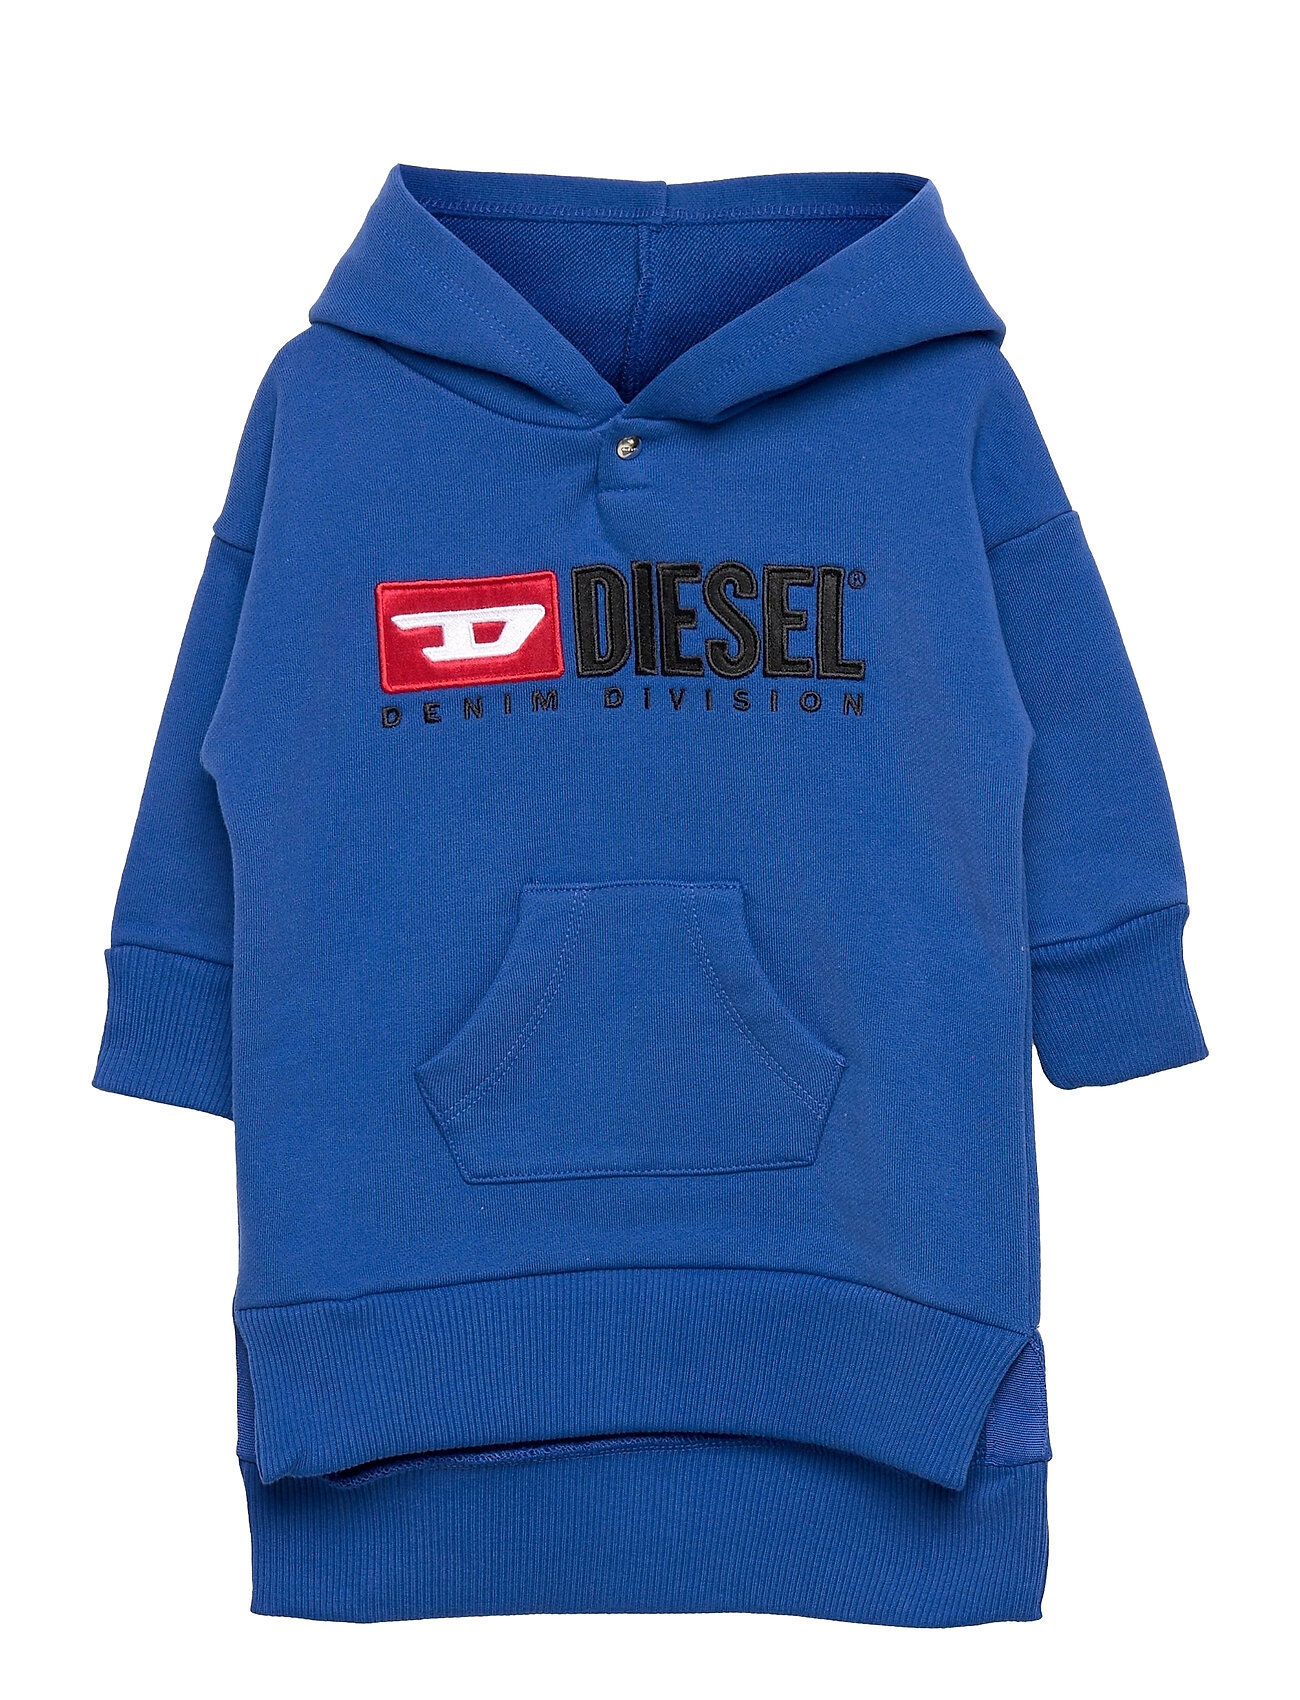 Diesel Dilsecb Dress Hettegenser Genser Blå Diesel